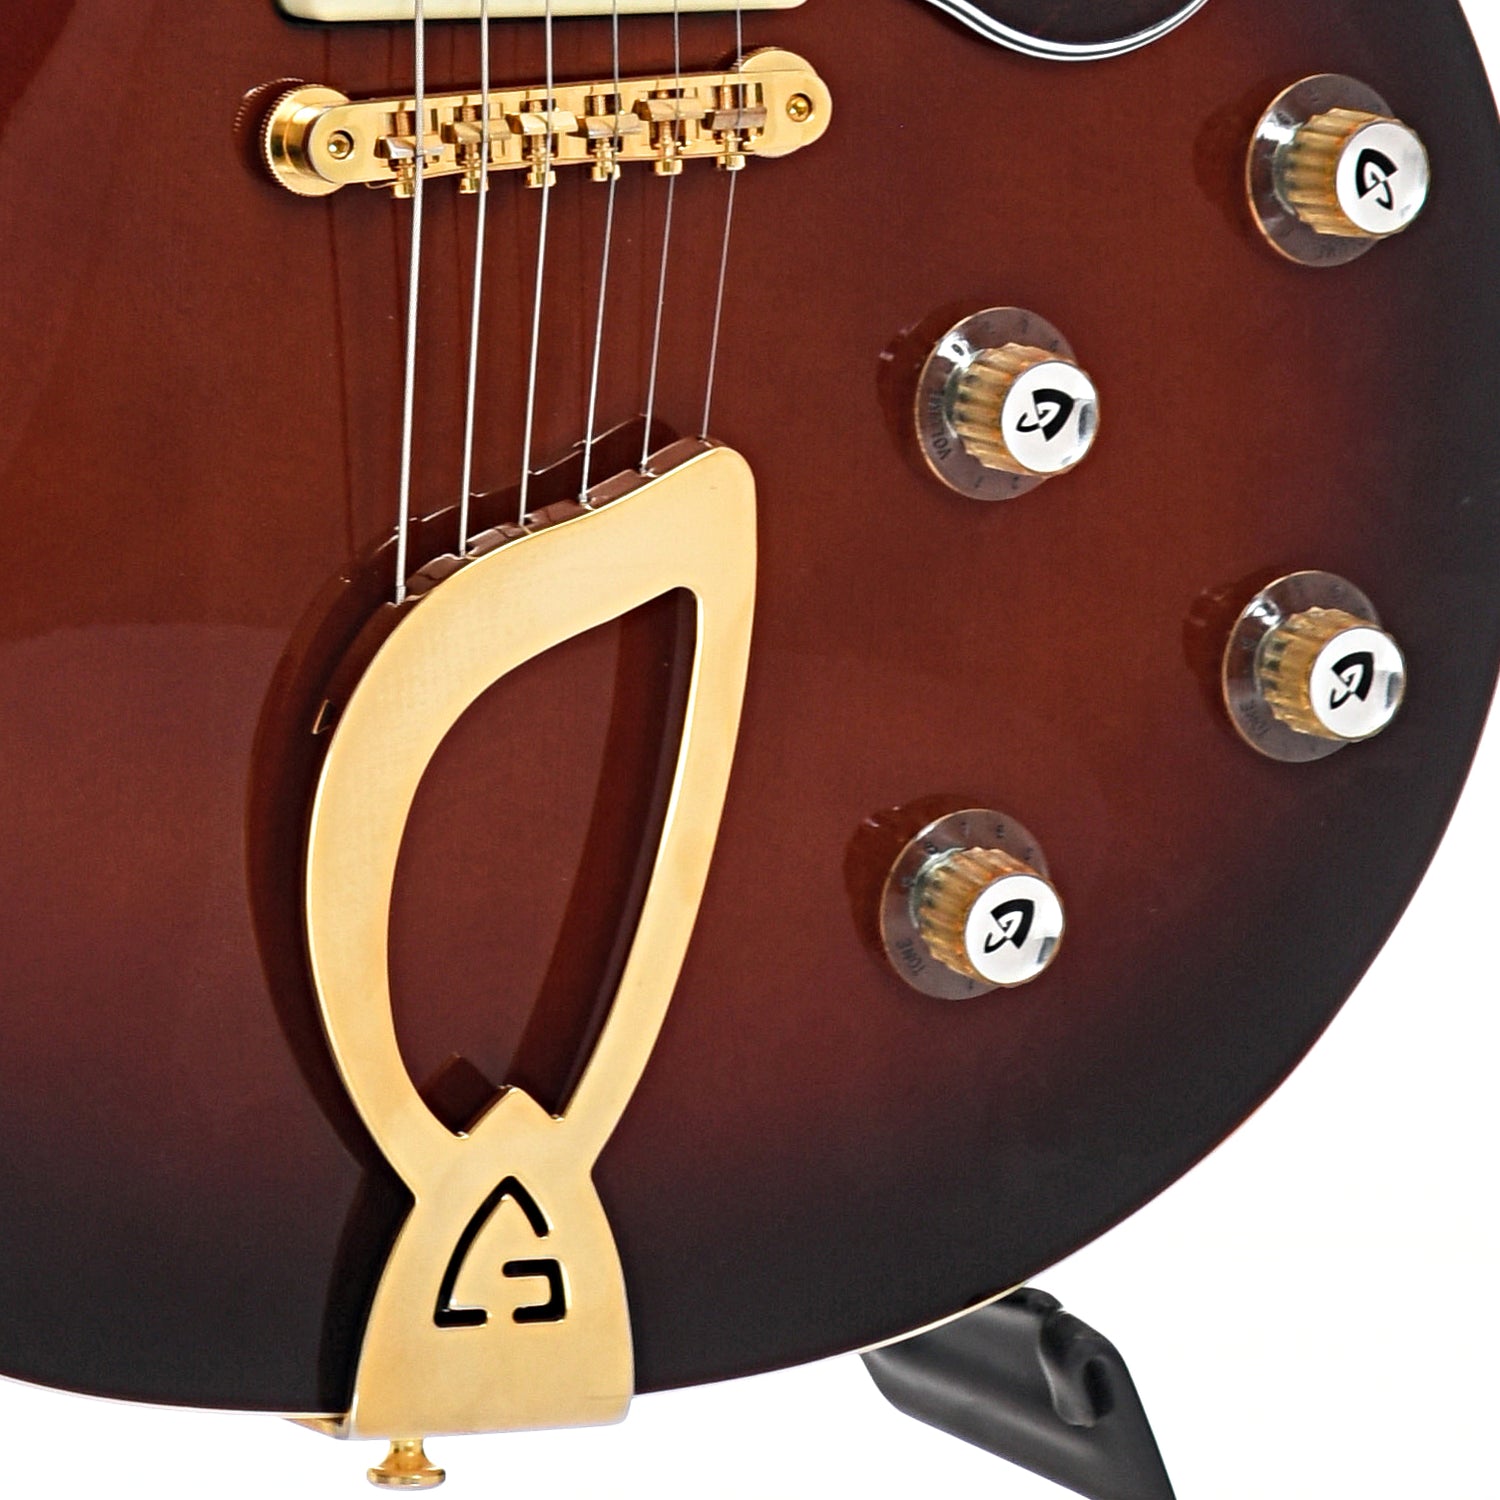 Tailpiece, controls and bridge of Guild Aristocrat P-90 Guitar